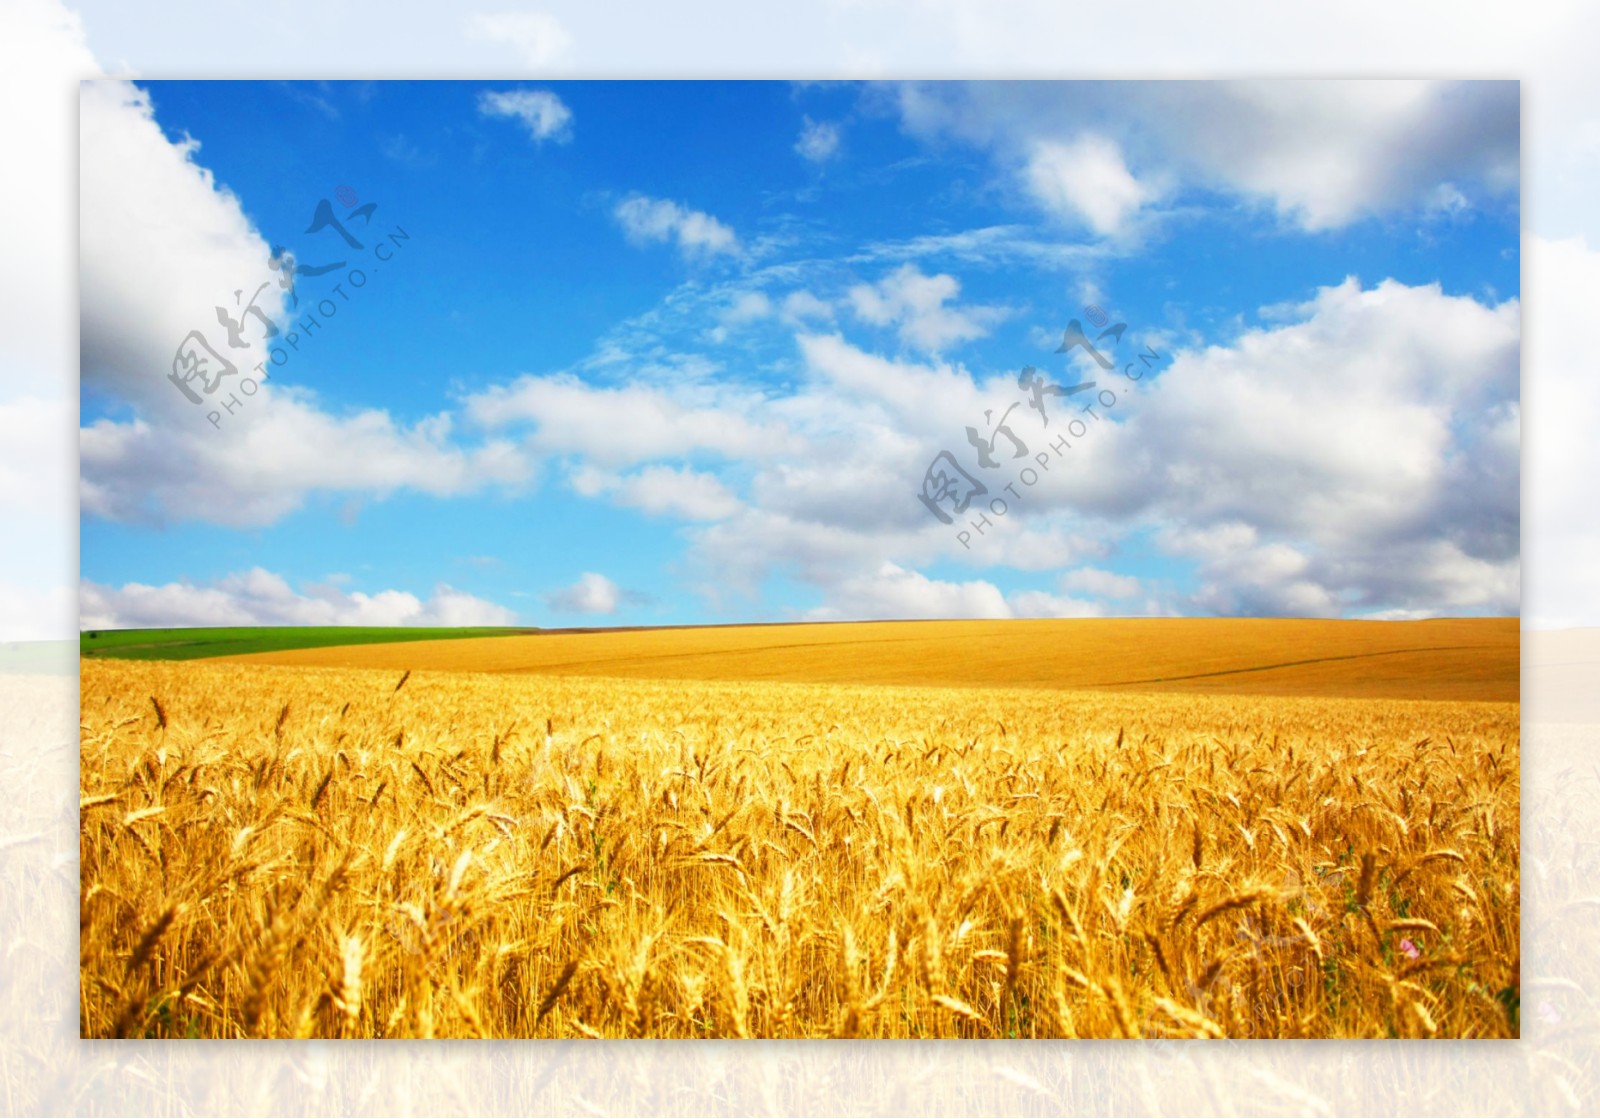 农作物麦田风景图片